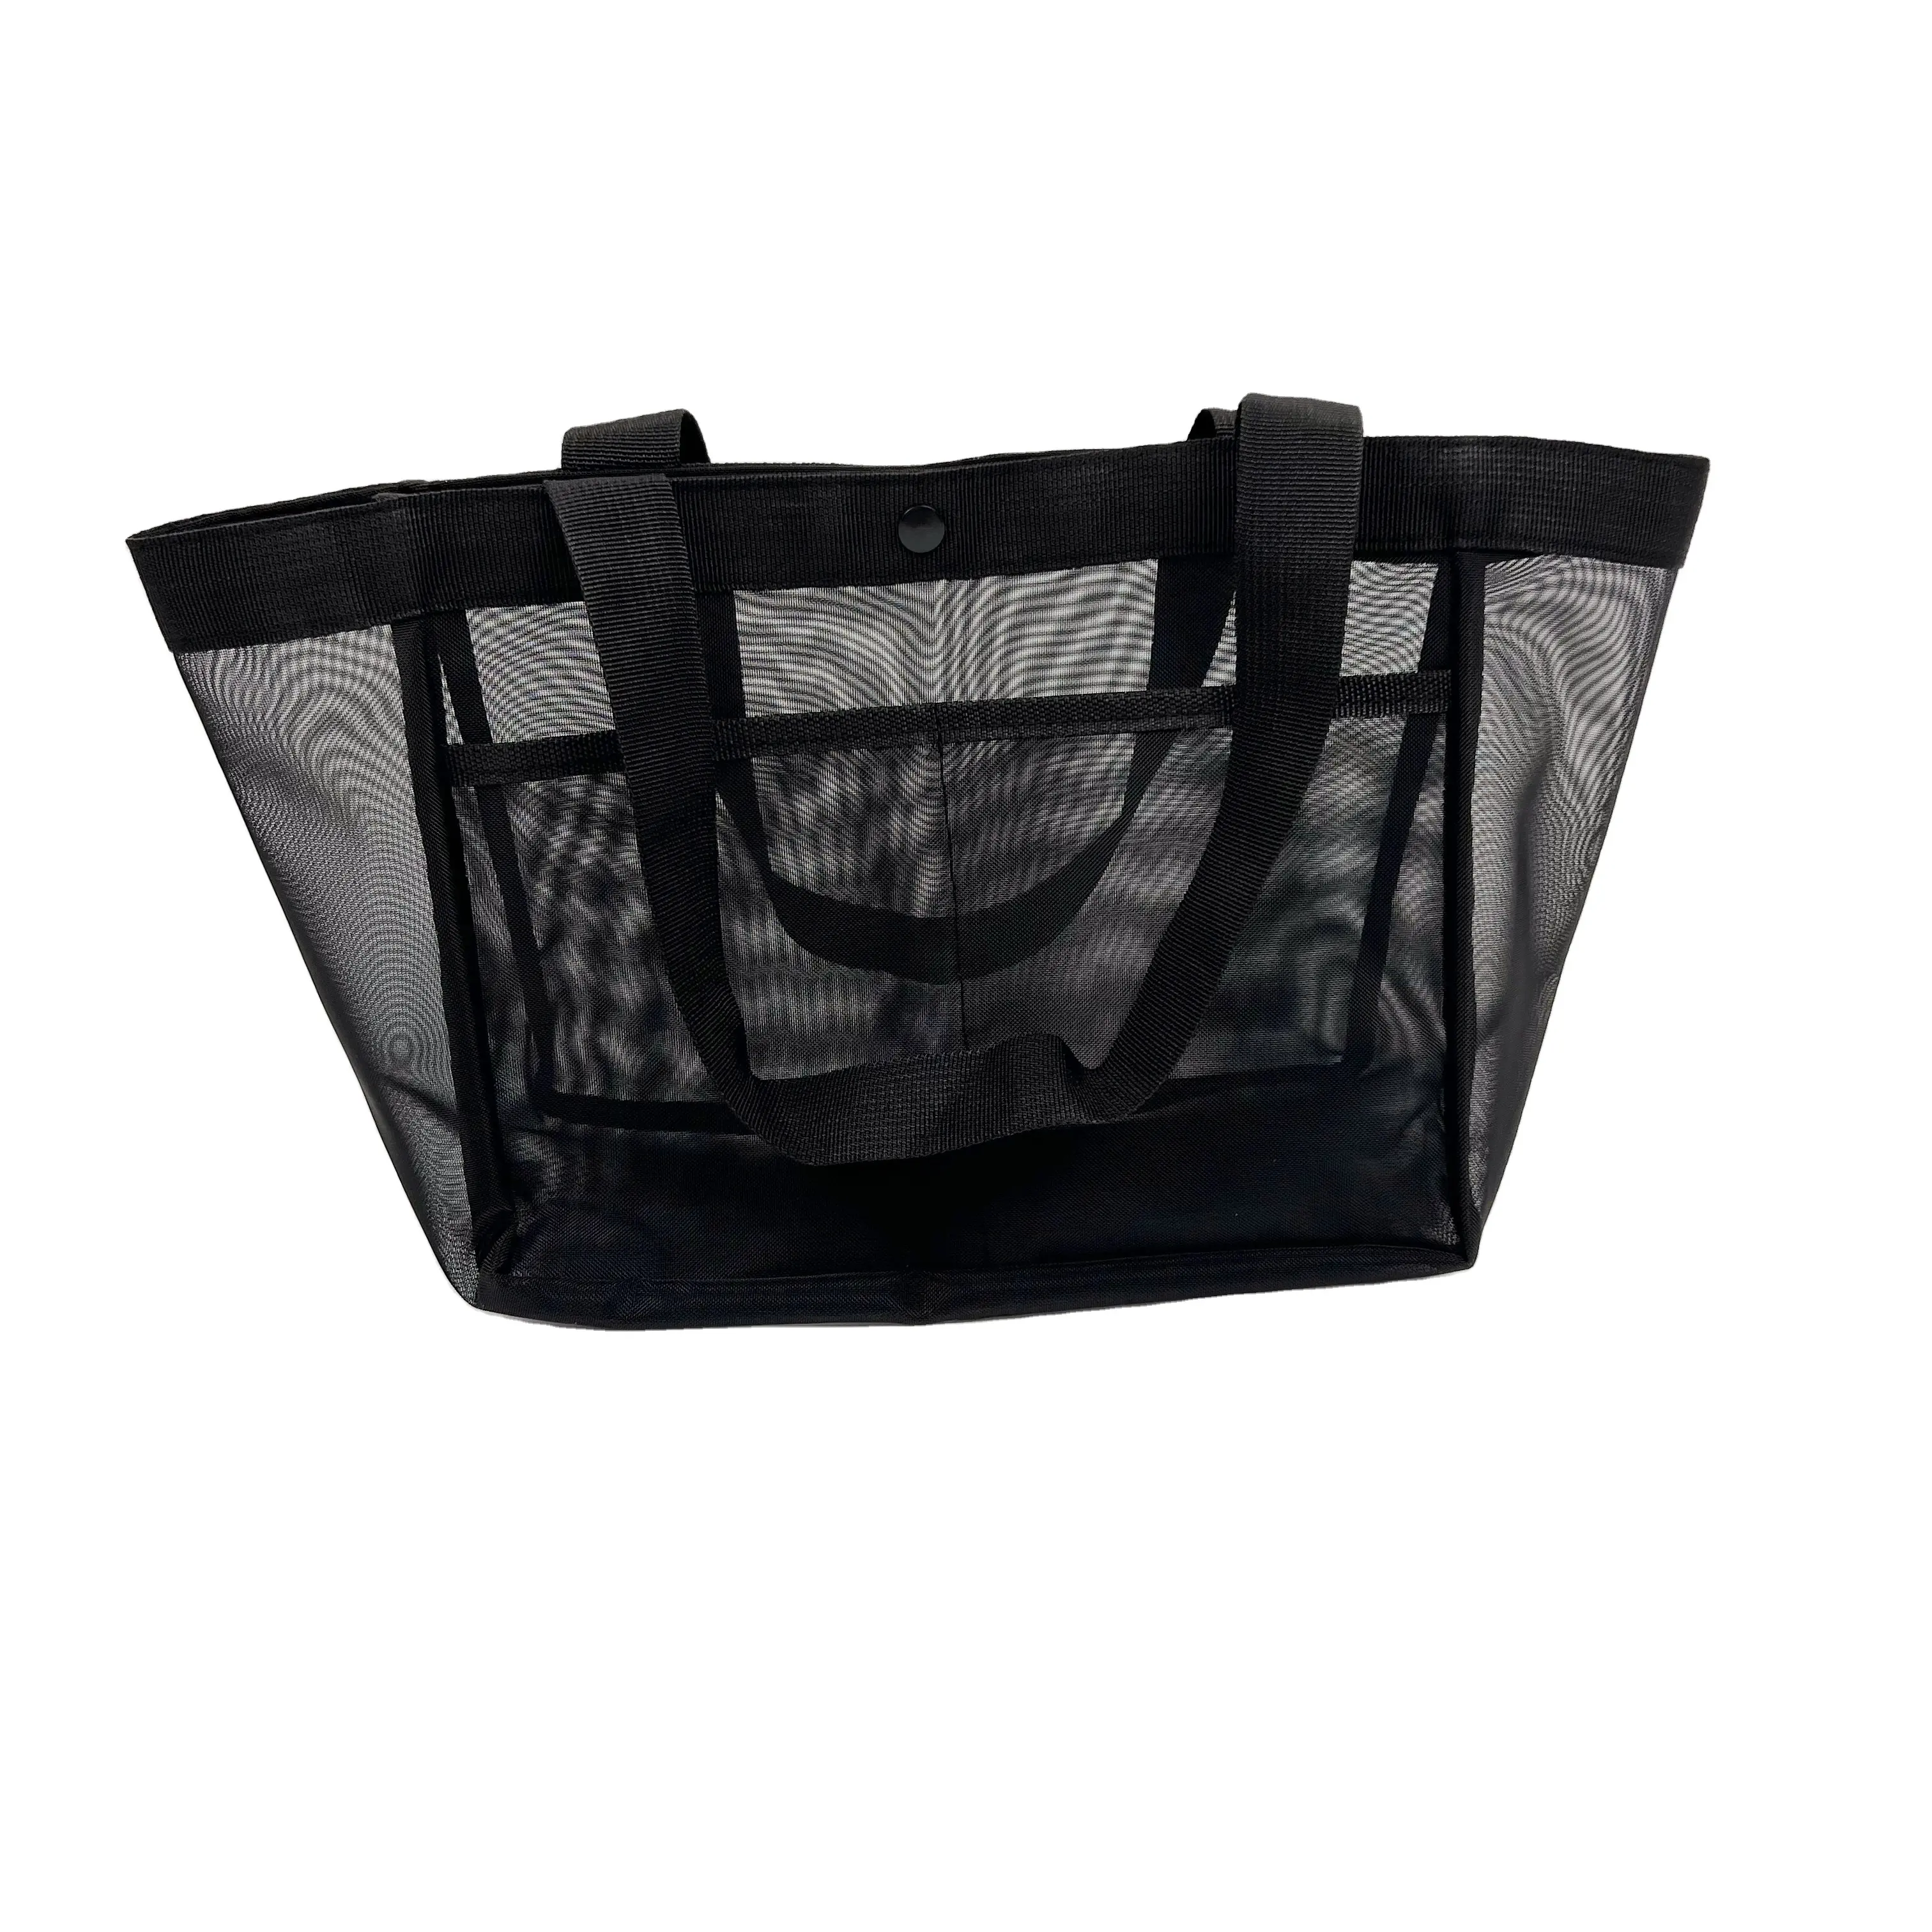 परिवार की महिलाओं के लिए अच्छी बिक्री वाला मेश टोट बैग, पुन: प्रयोज्य नायलॉन बीच शॉपिंग टोट बैग को संभालता है